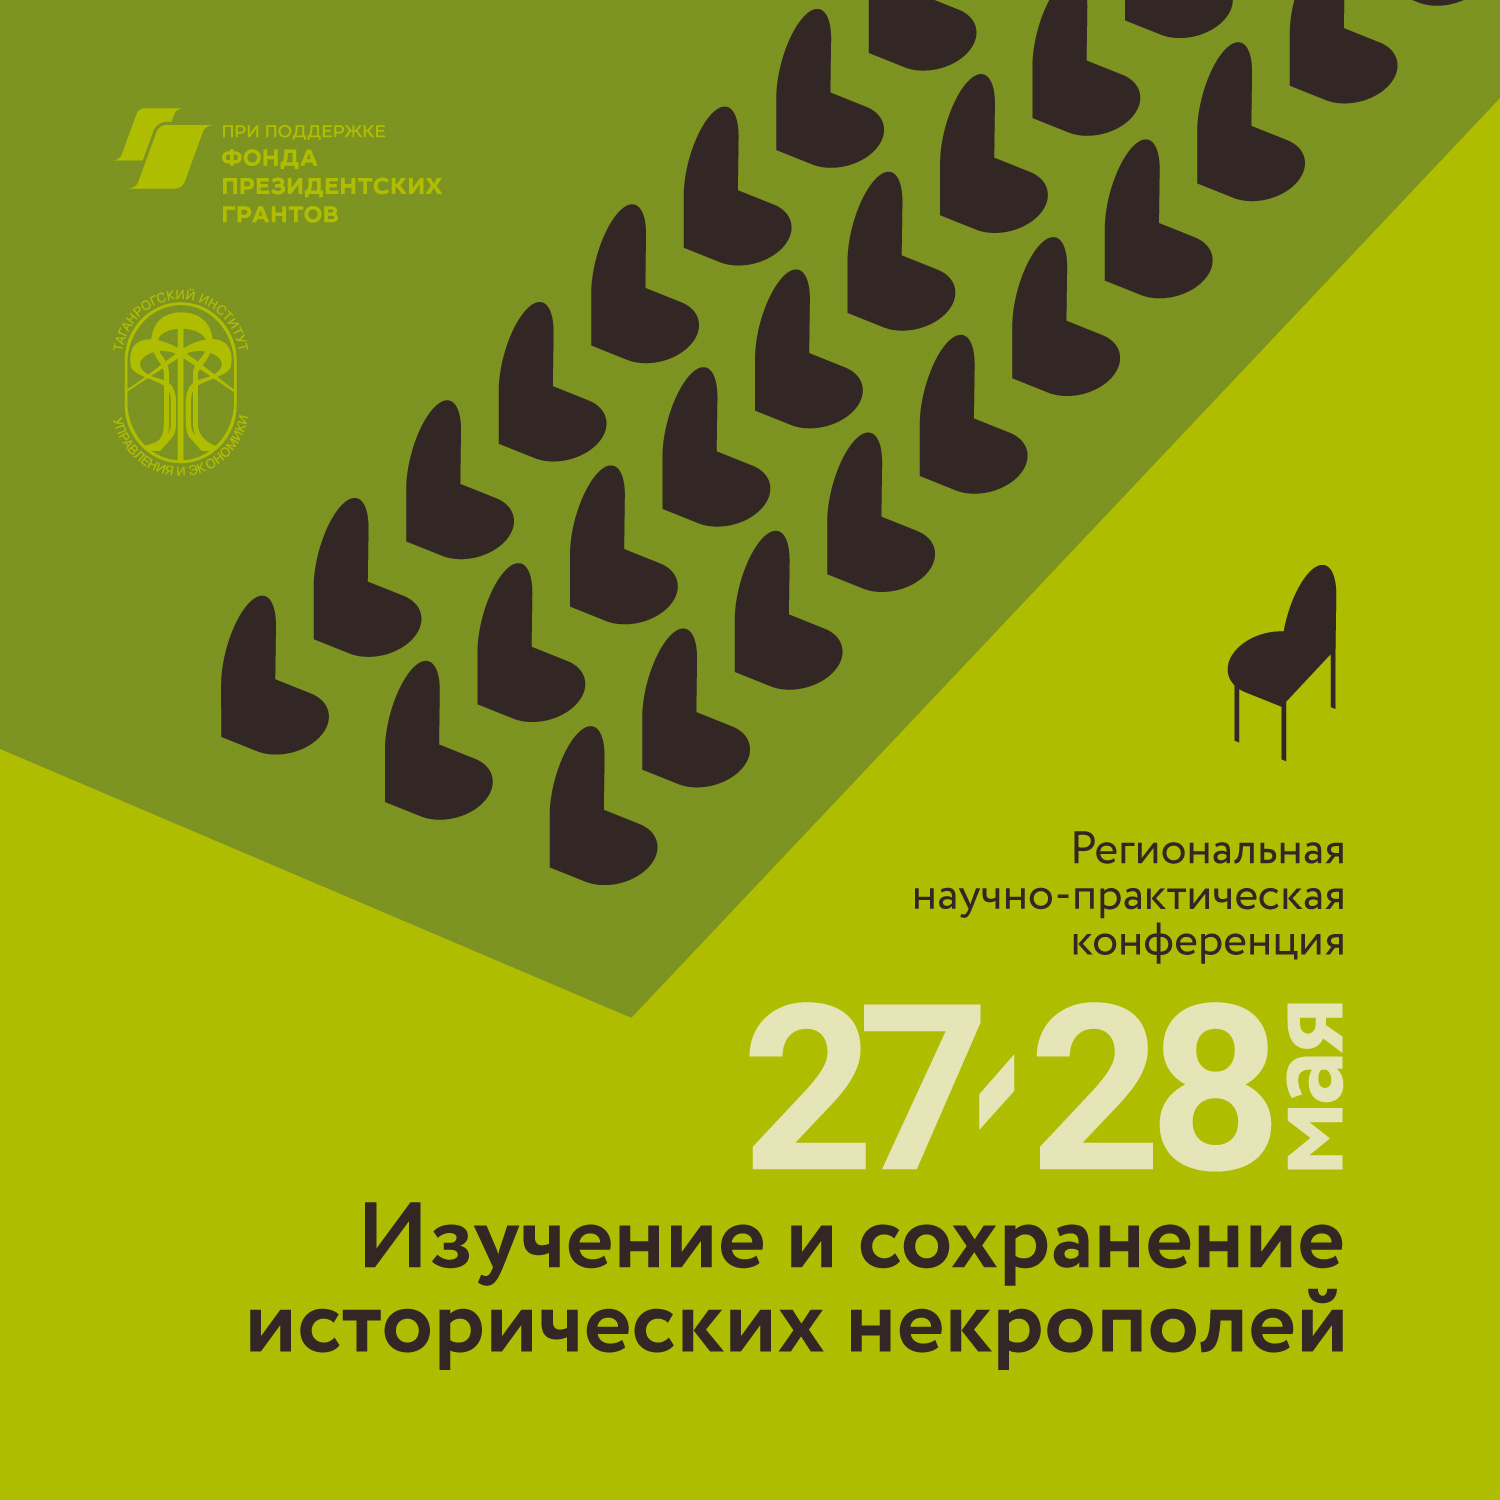 Региональная научно-практическая конференция «Изучение и сохранение исторических некрополей» 27-28 мая 2022 г. Таганрог